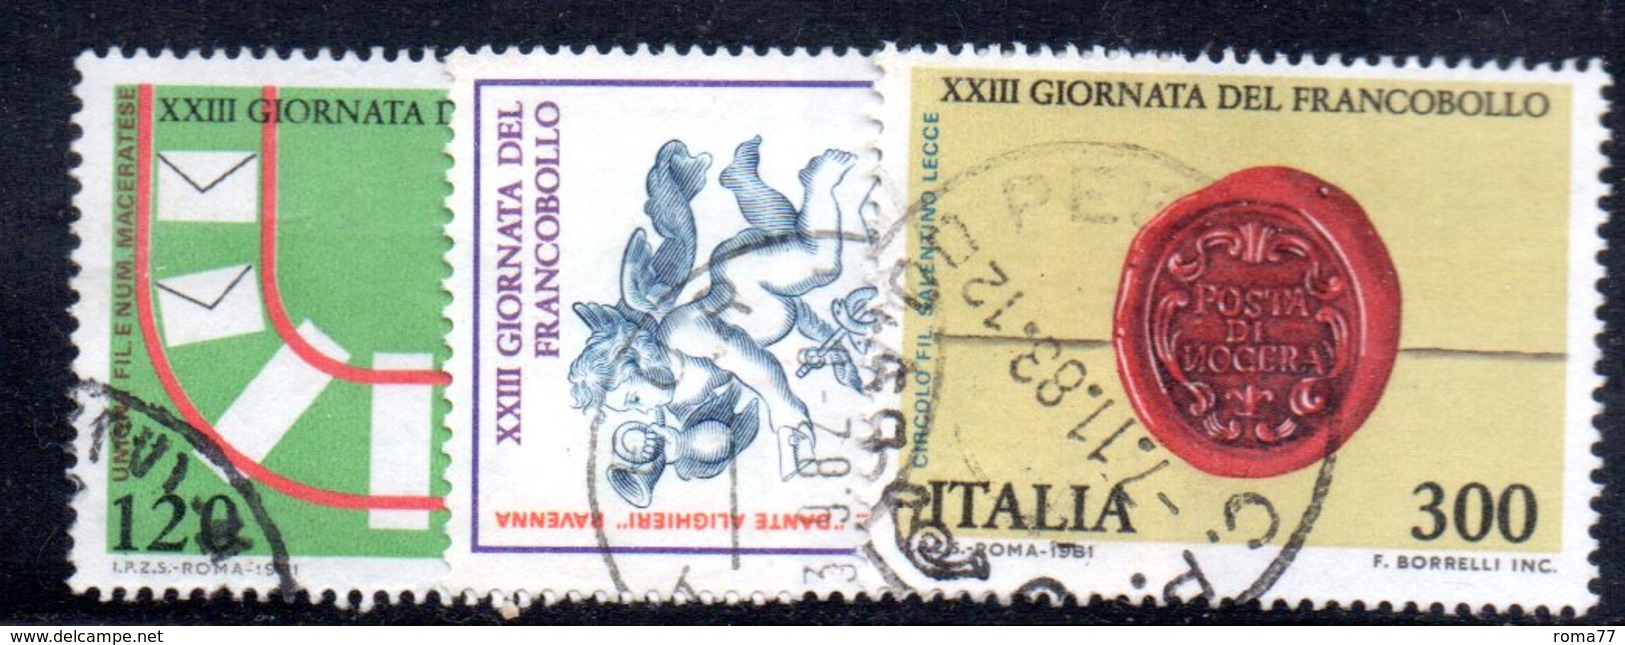 XP1670 - REPUBBLICA 1981, Serie Usata . GIORNATA FRANCOBOLLO - 1981-90: Used